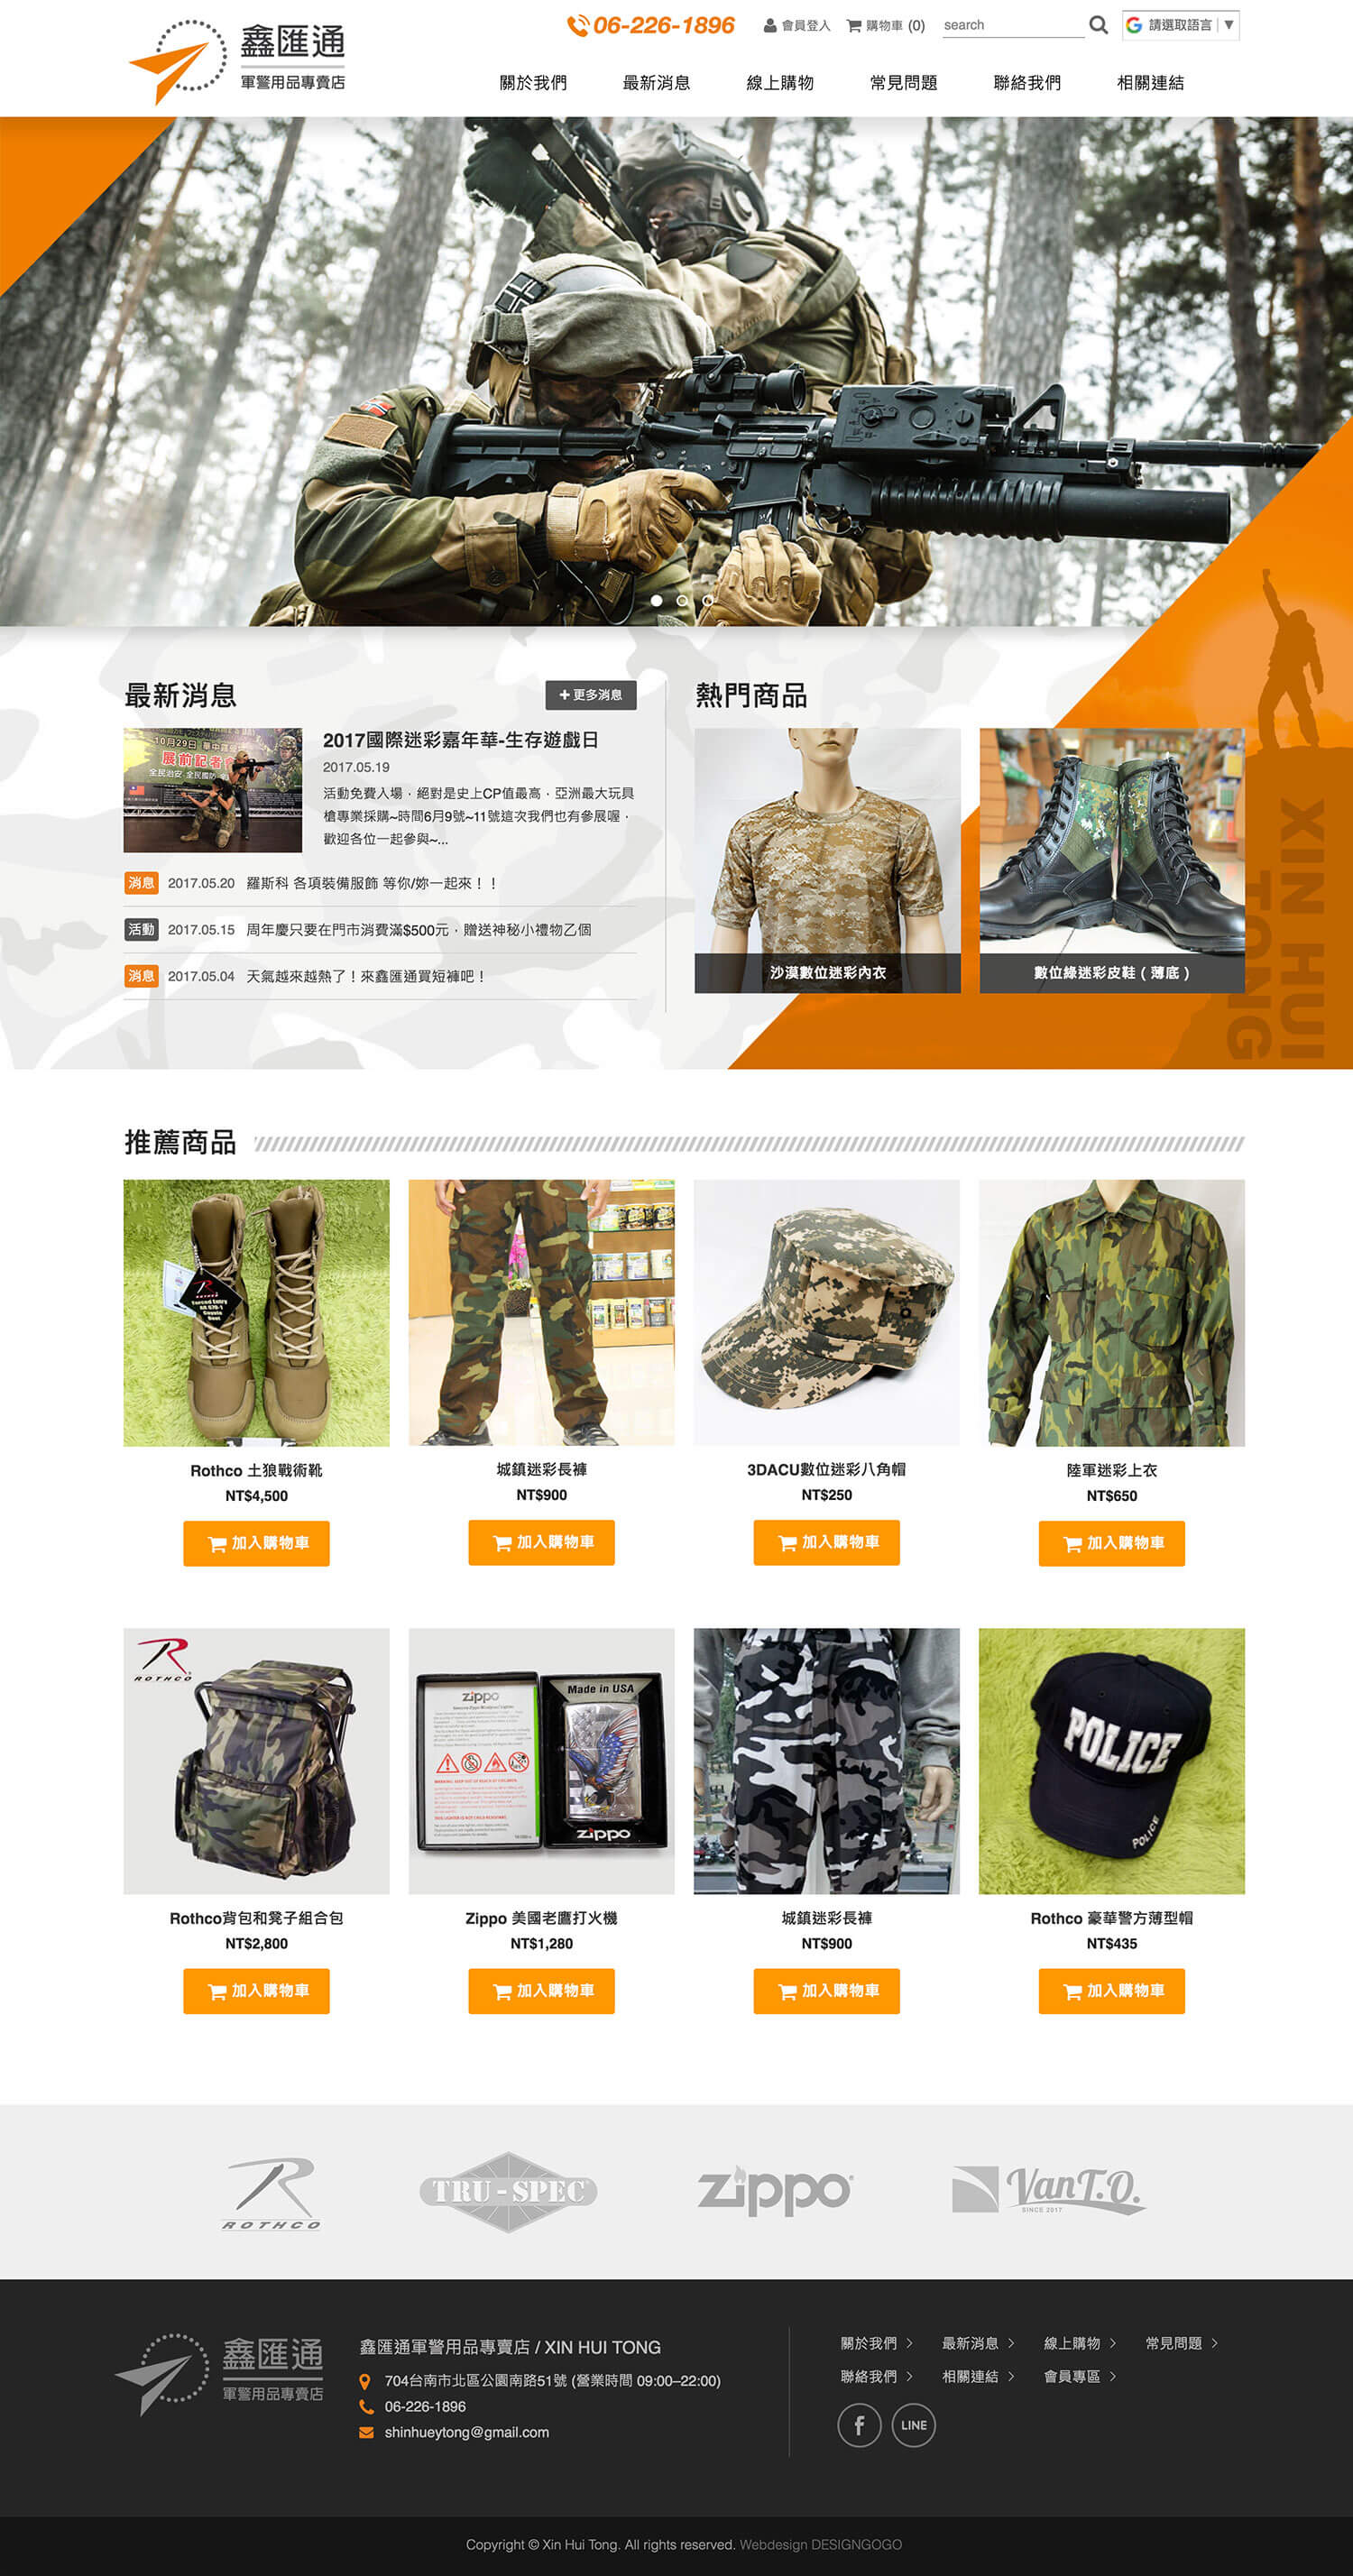 鑫匯通軍警用品專賣店 購物網站設計